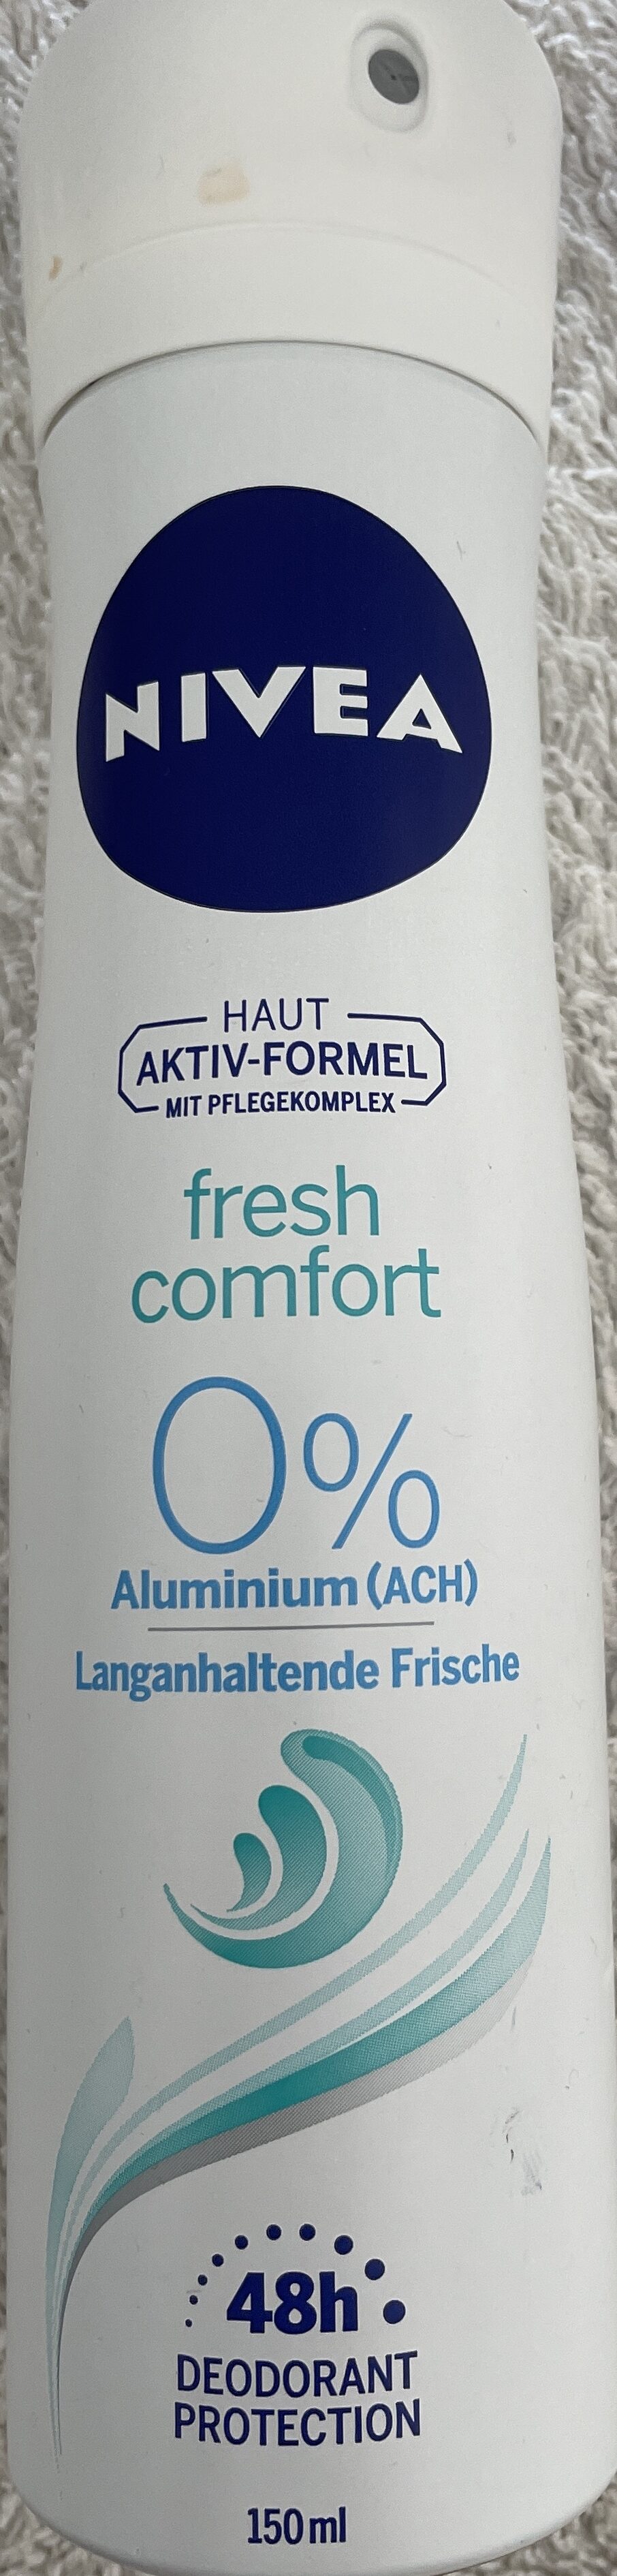 Fresh Comfort - Product - de